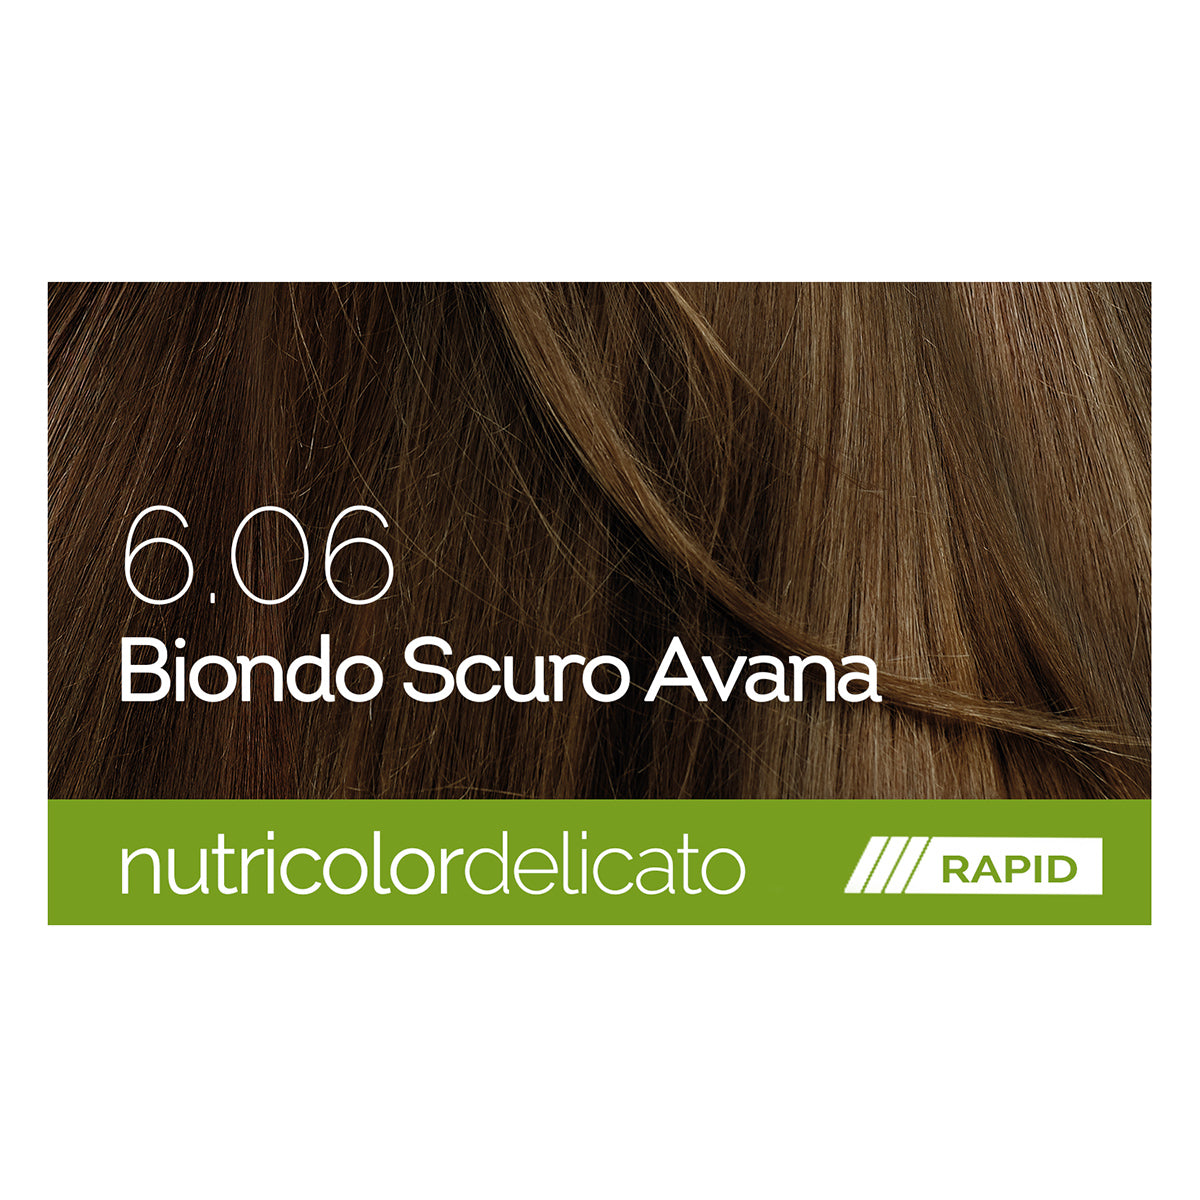 Biokap - Nutricolor - 6.06 Nutricolor Delicato Rapid - ebeauty